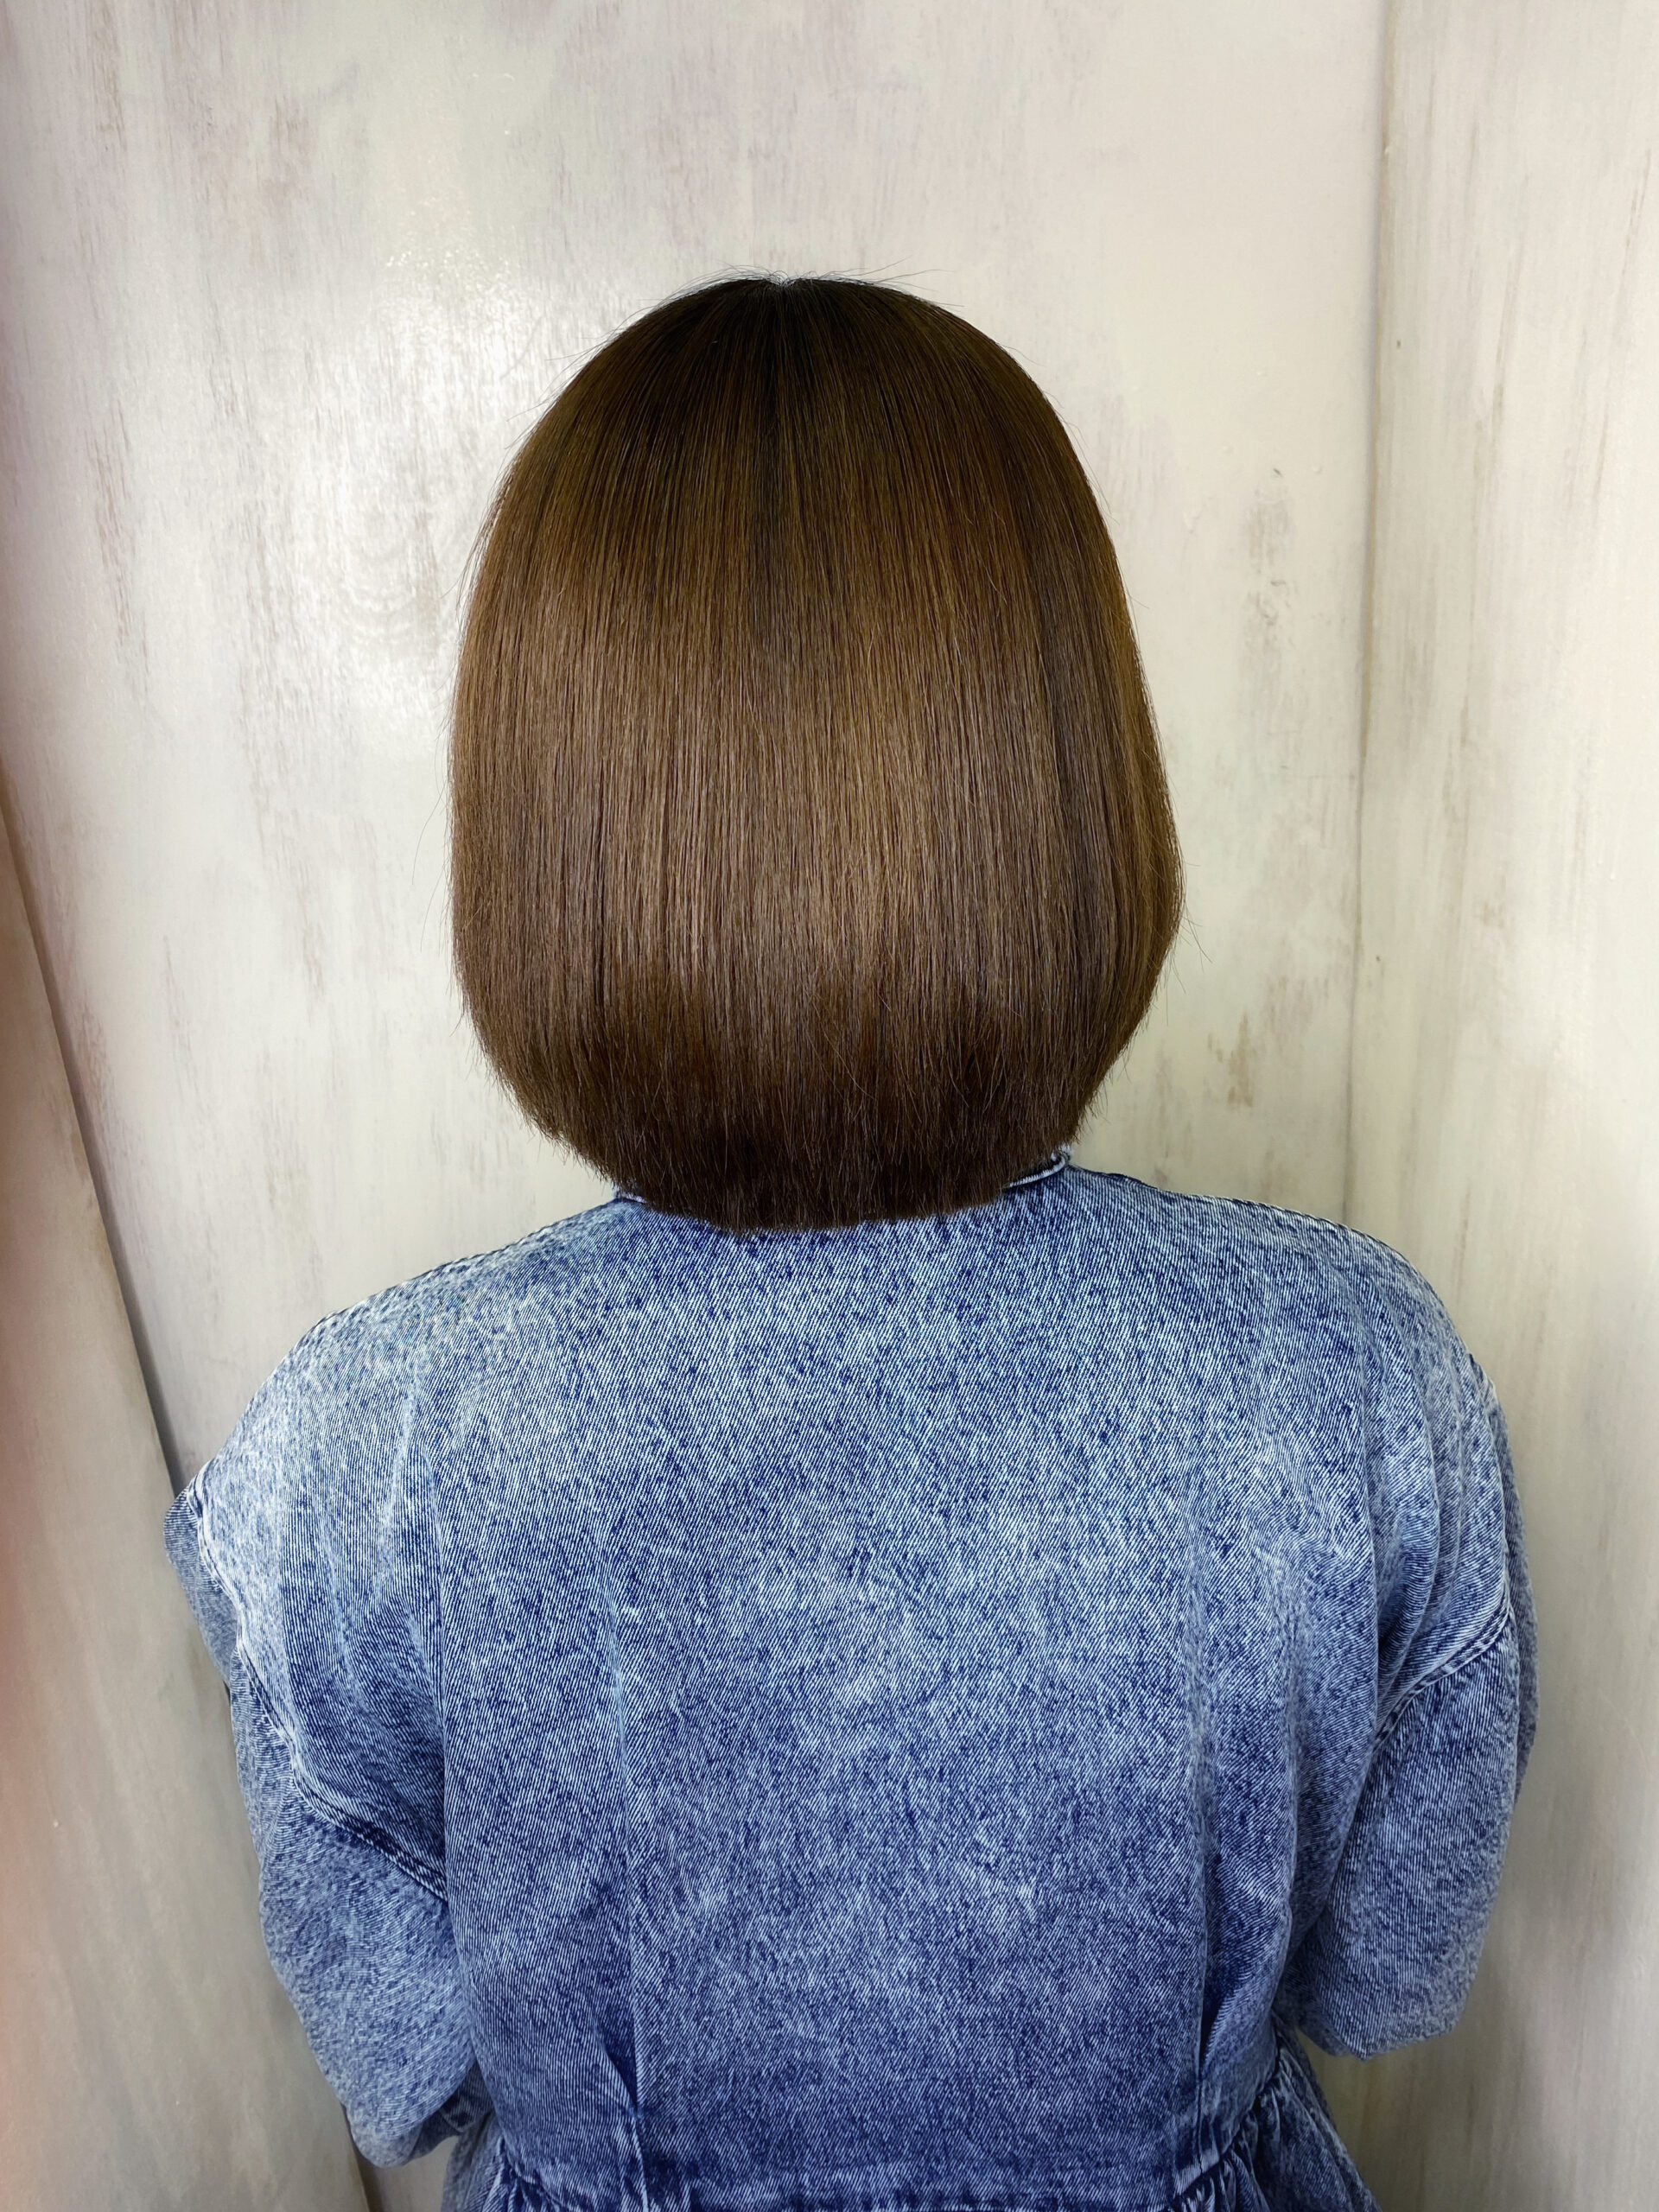 ジュエリーシステム×LULUトリートメント×縮毛矯正でパサつきが気になる方を艶髪ストレートヘア。